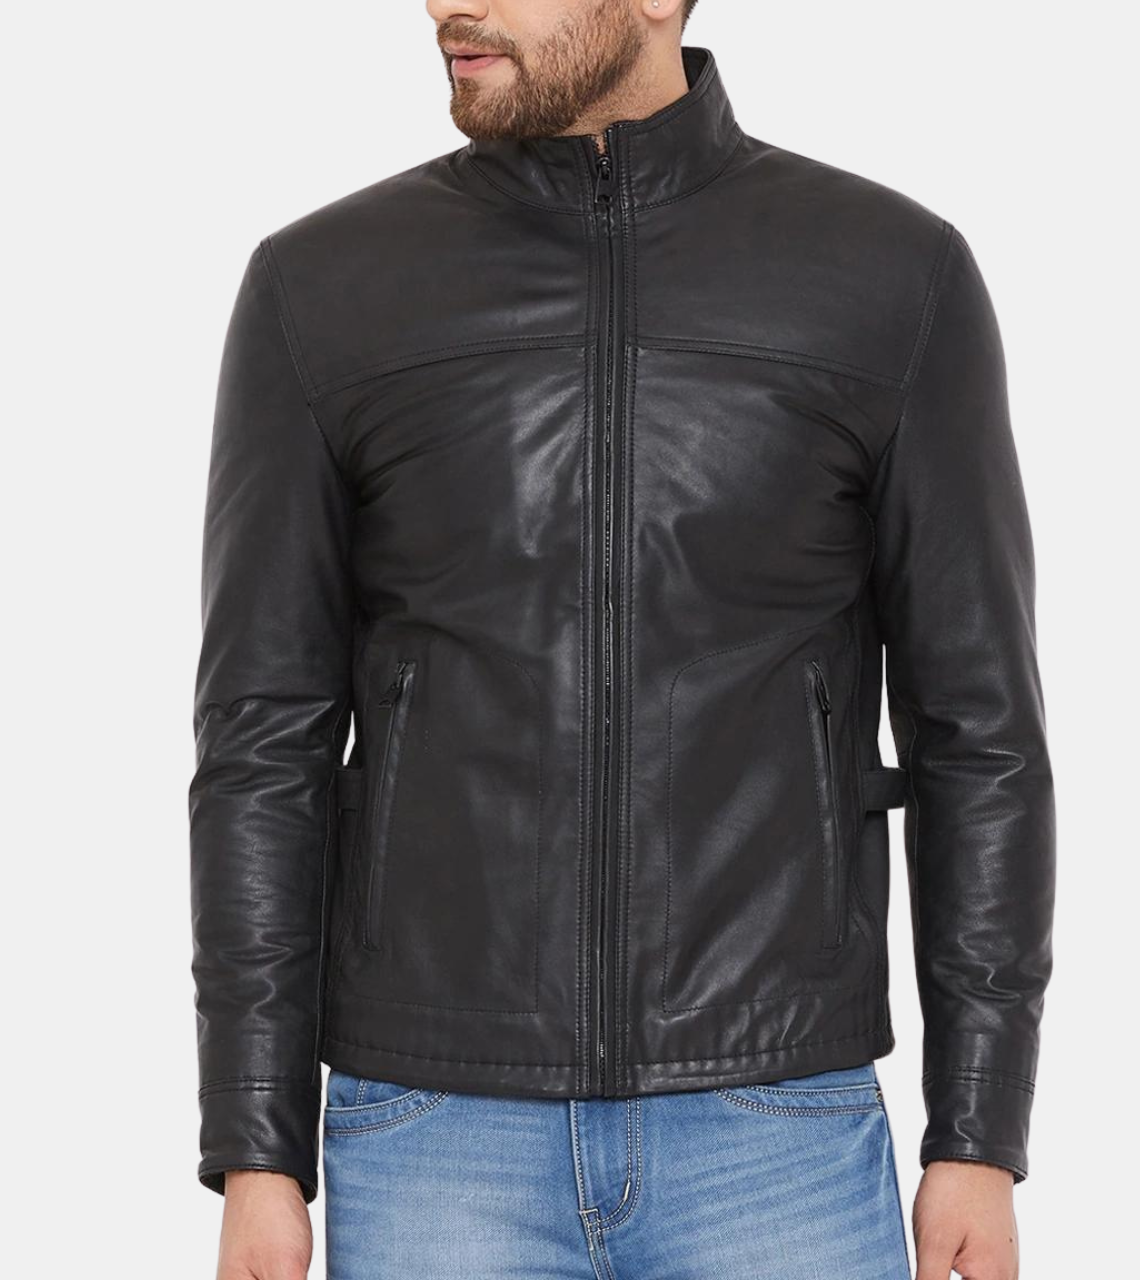  Sullivan Men's Leather Jacket 